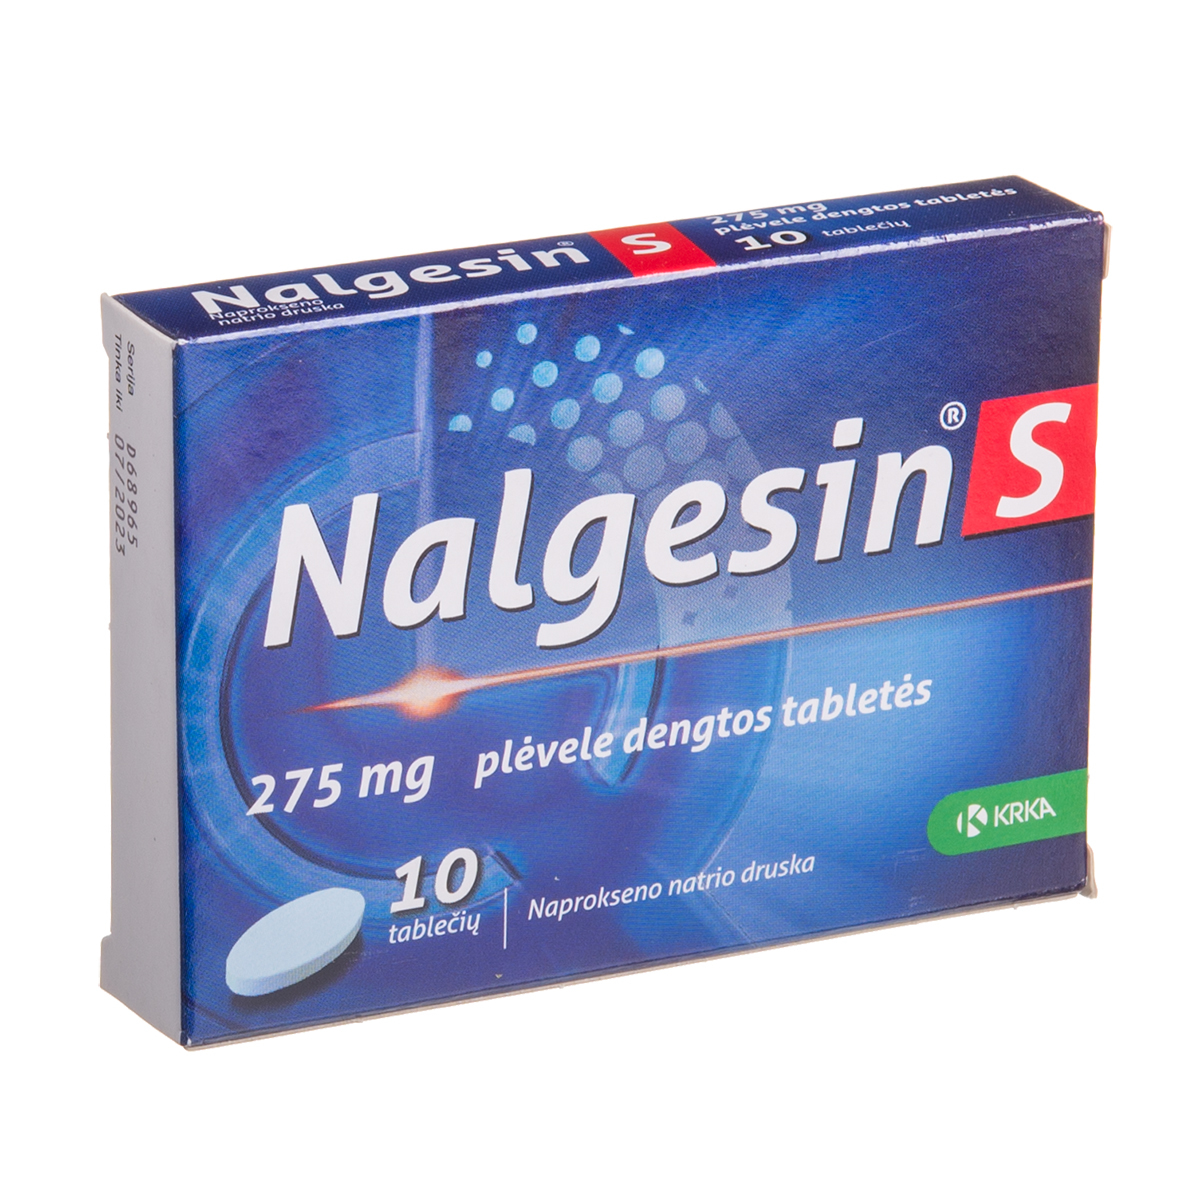 NALGESIN S, 275 mg, plėvele dengtos tabletės, N10